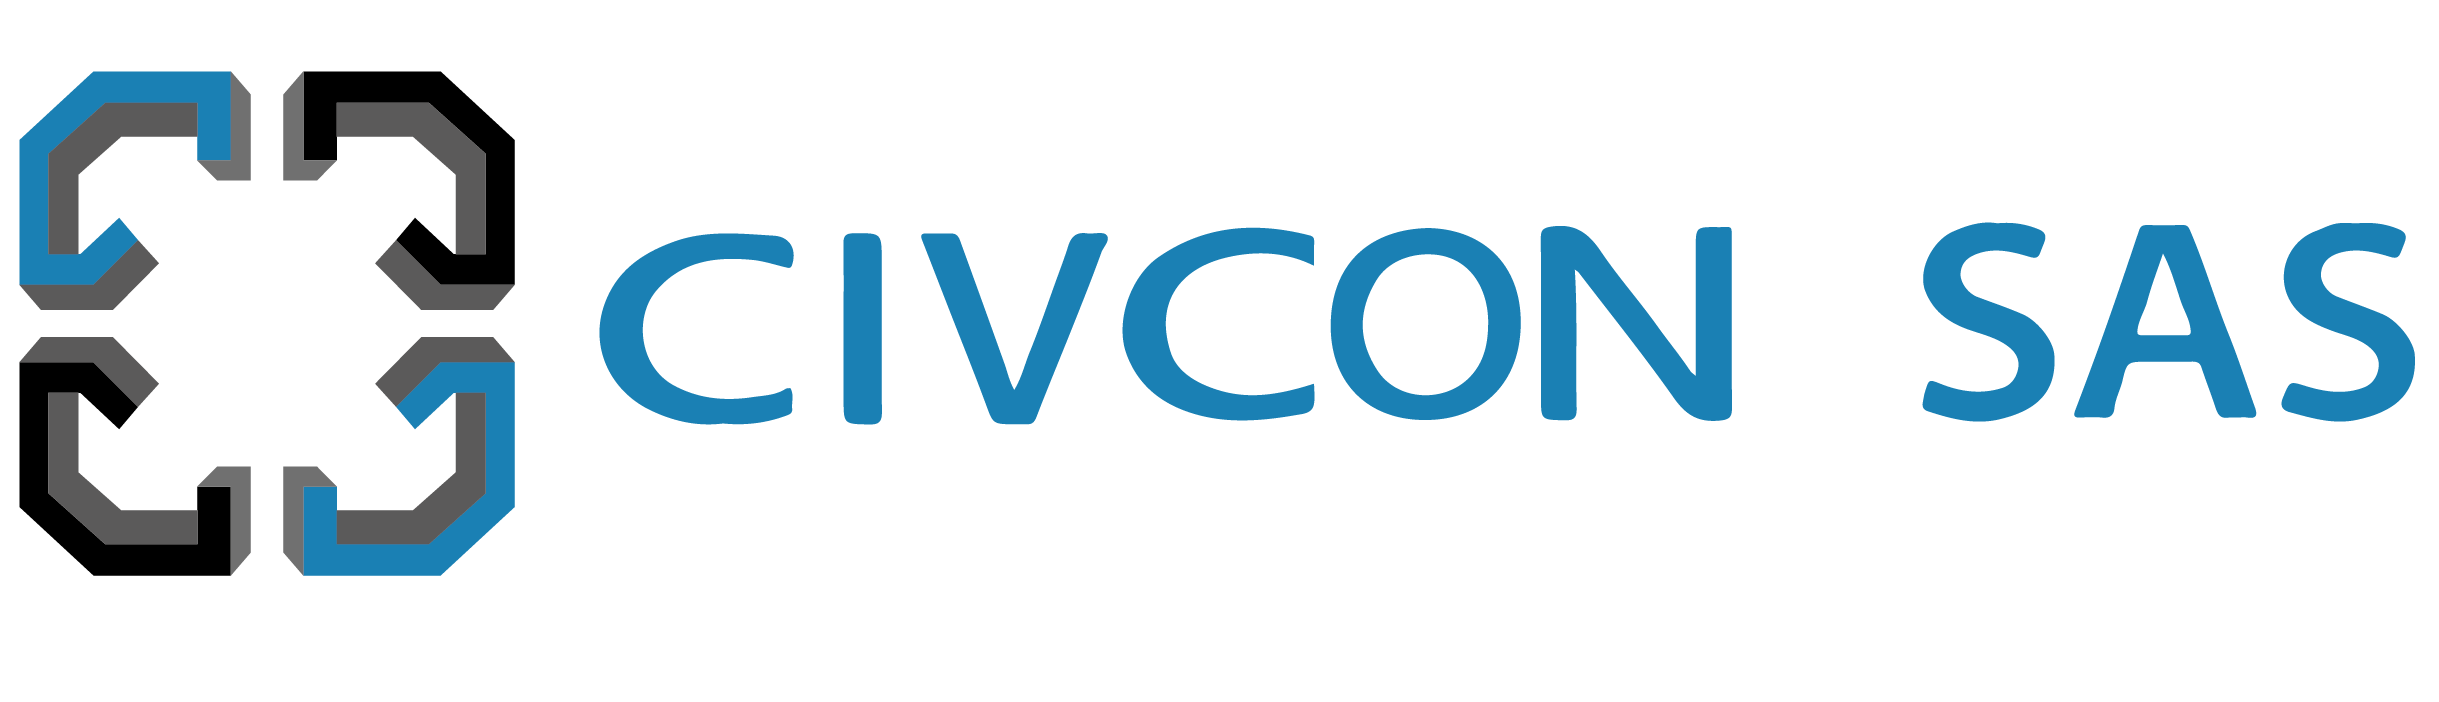 CIVCON SAS